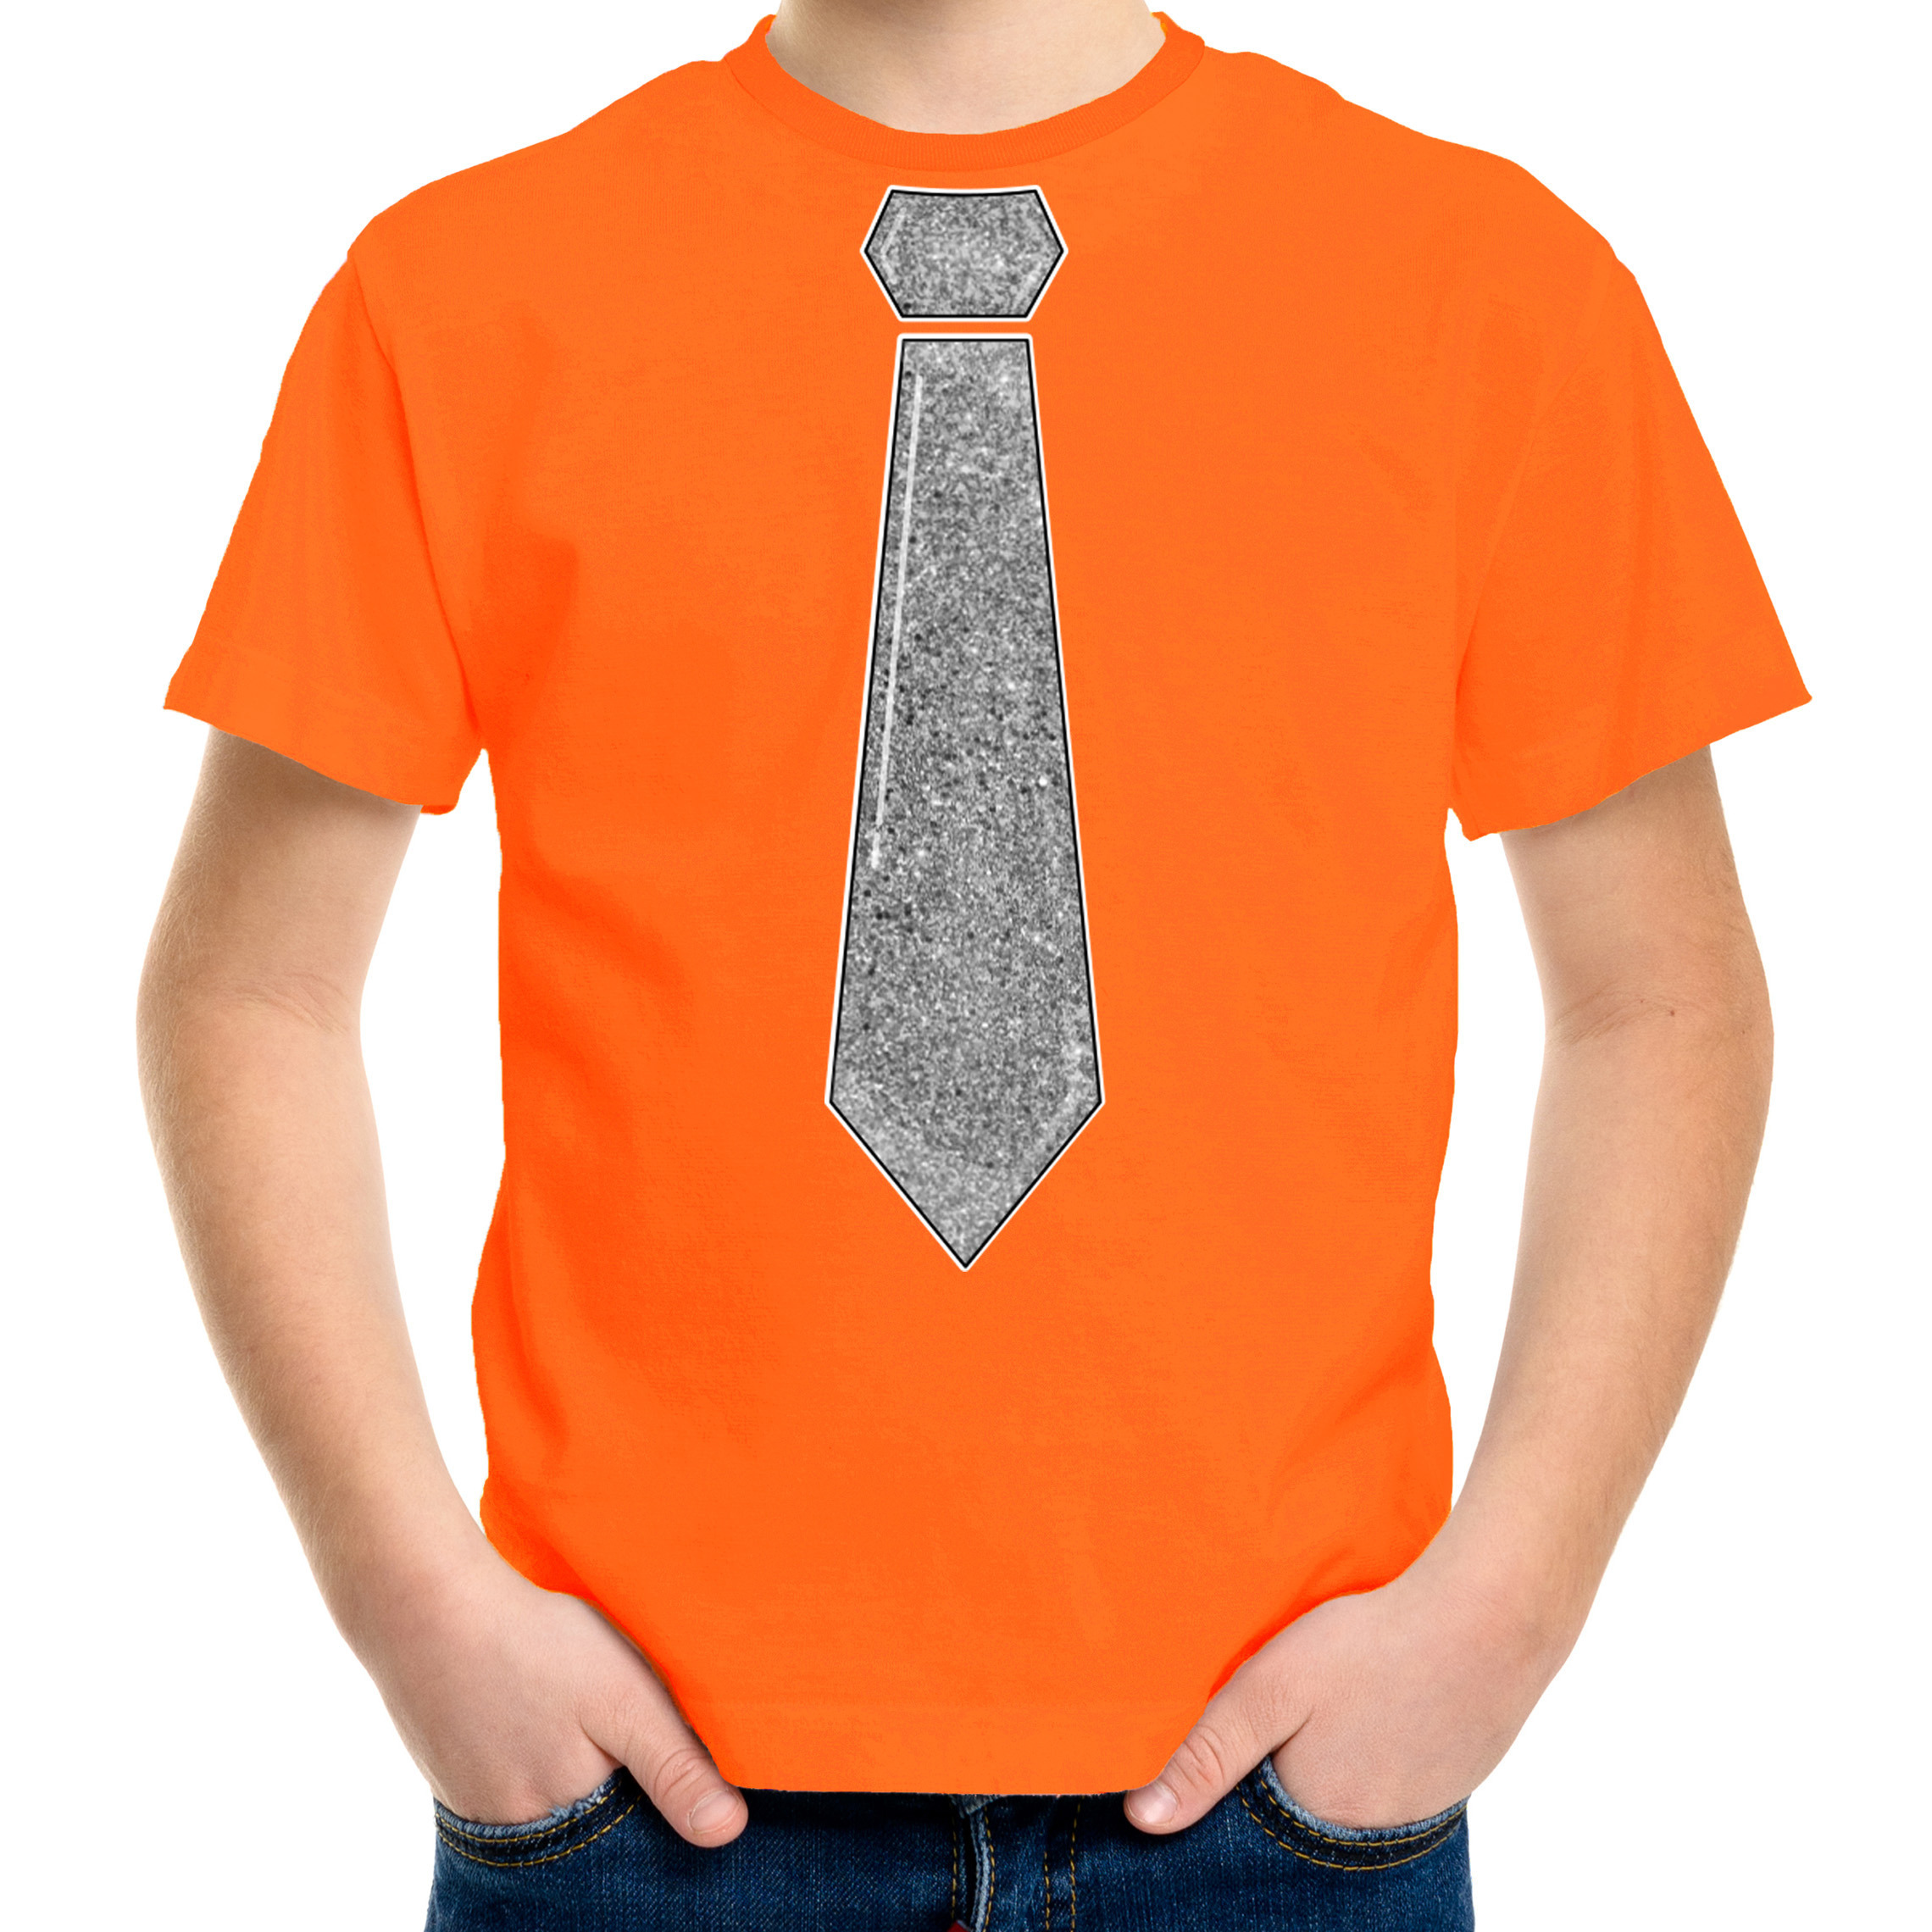 Verkleed t-shirt voor kinderen glitter stropdas oranje jongen carnaval-themafeest kostuum